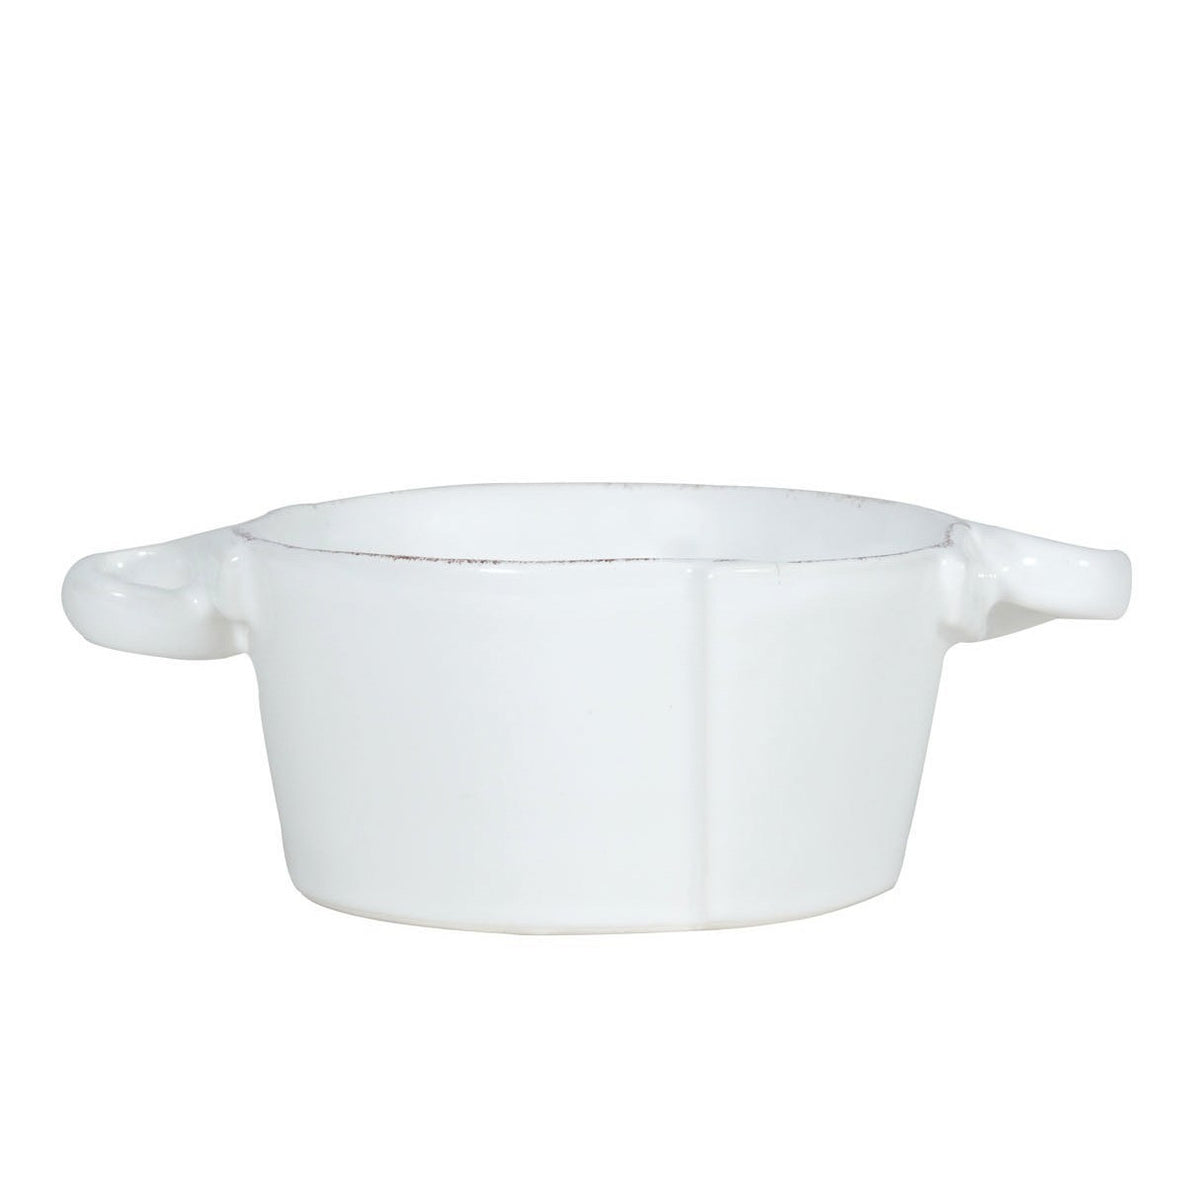 VIETRI: Lastra White Small Handled Bowl - Artistica.com